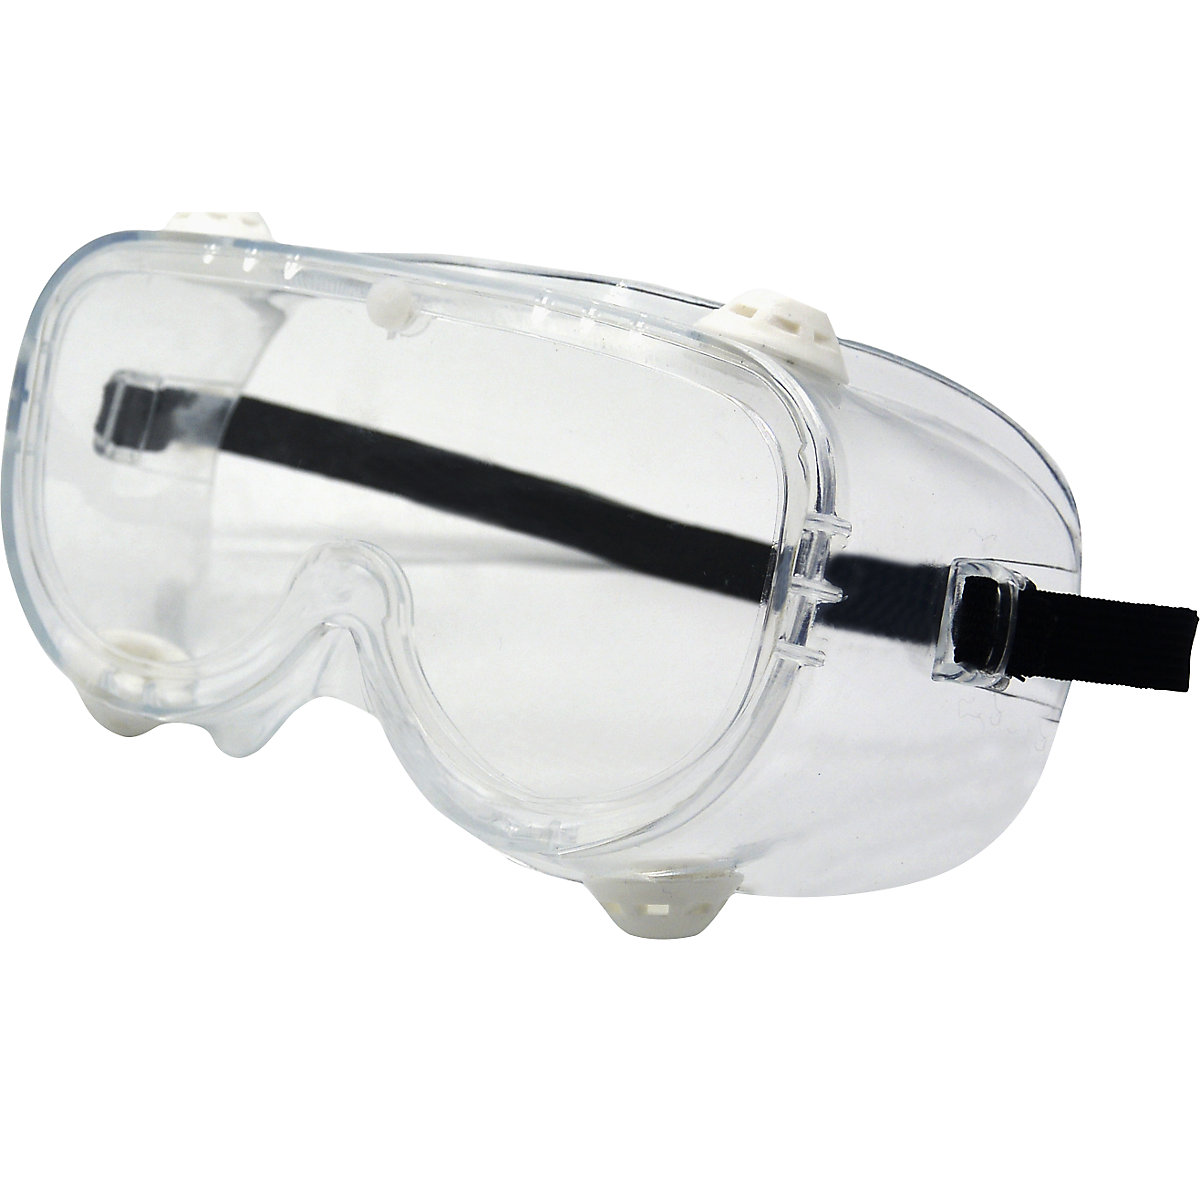 Zaštitne naočale s punim vidnim poljem EN 166 (pak. 10 ili 200 kom.)